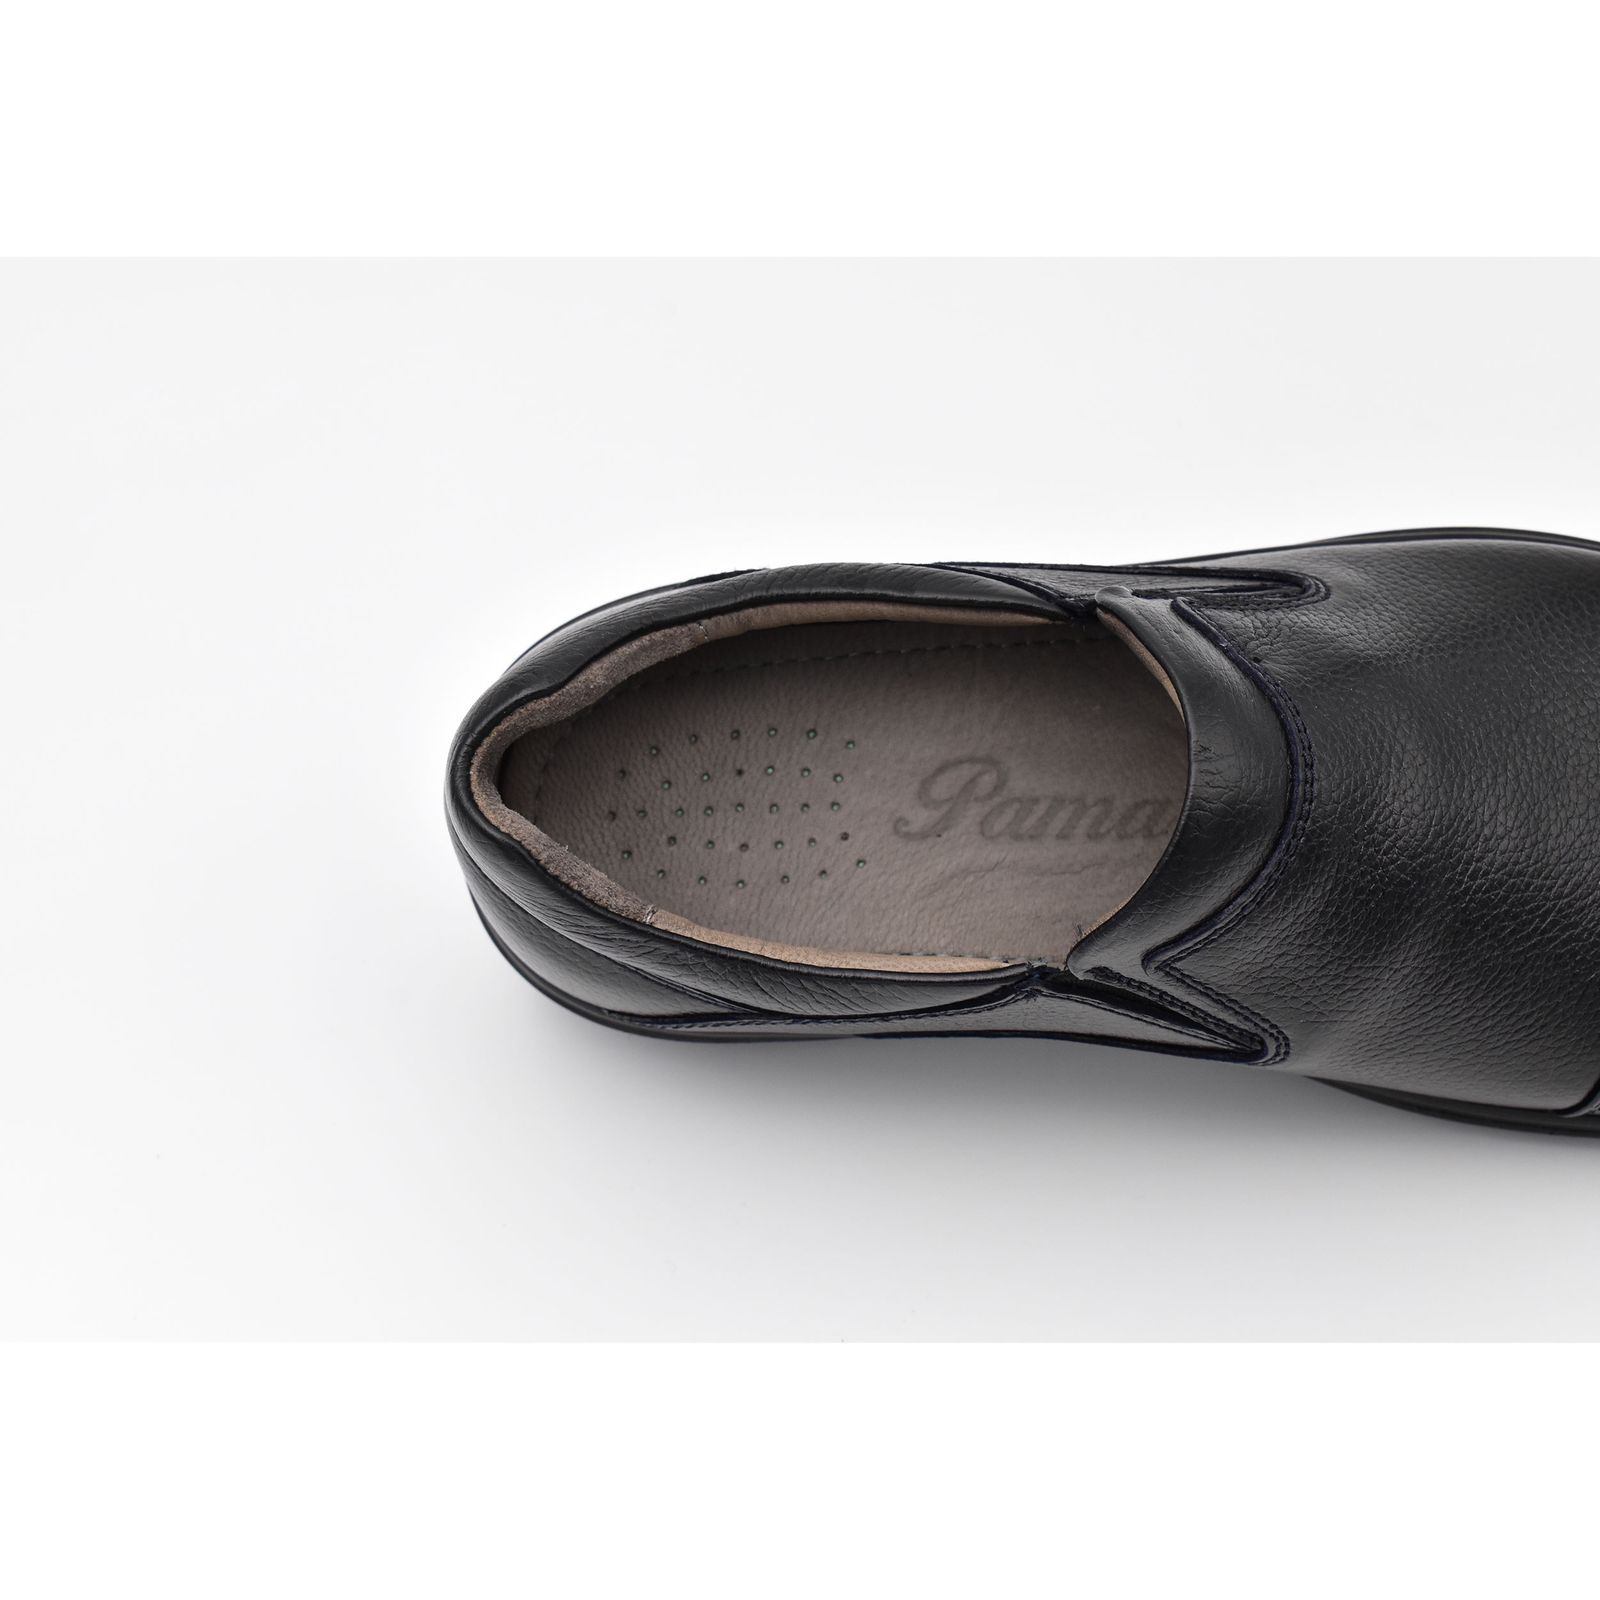 کفش روزمره مردانه پاما مدل TT کد G1123 -  - 11